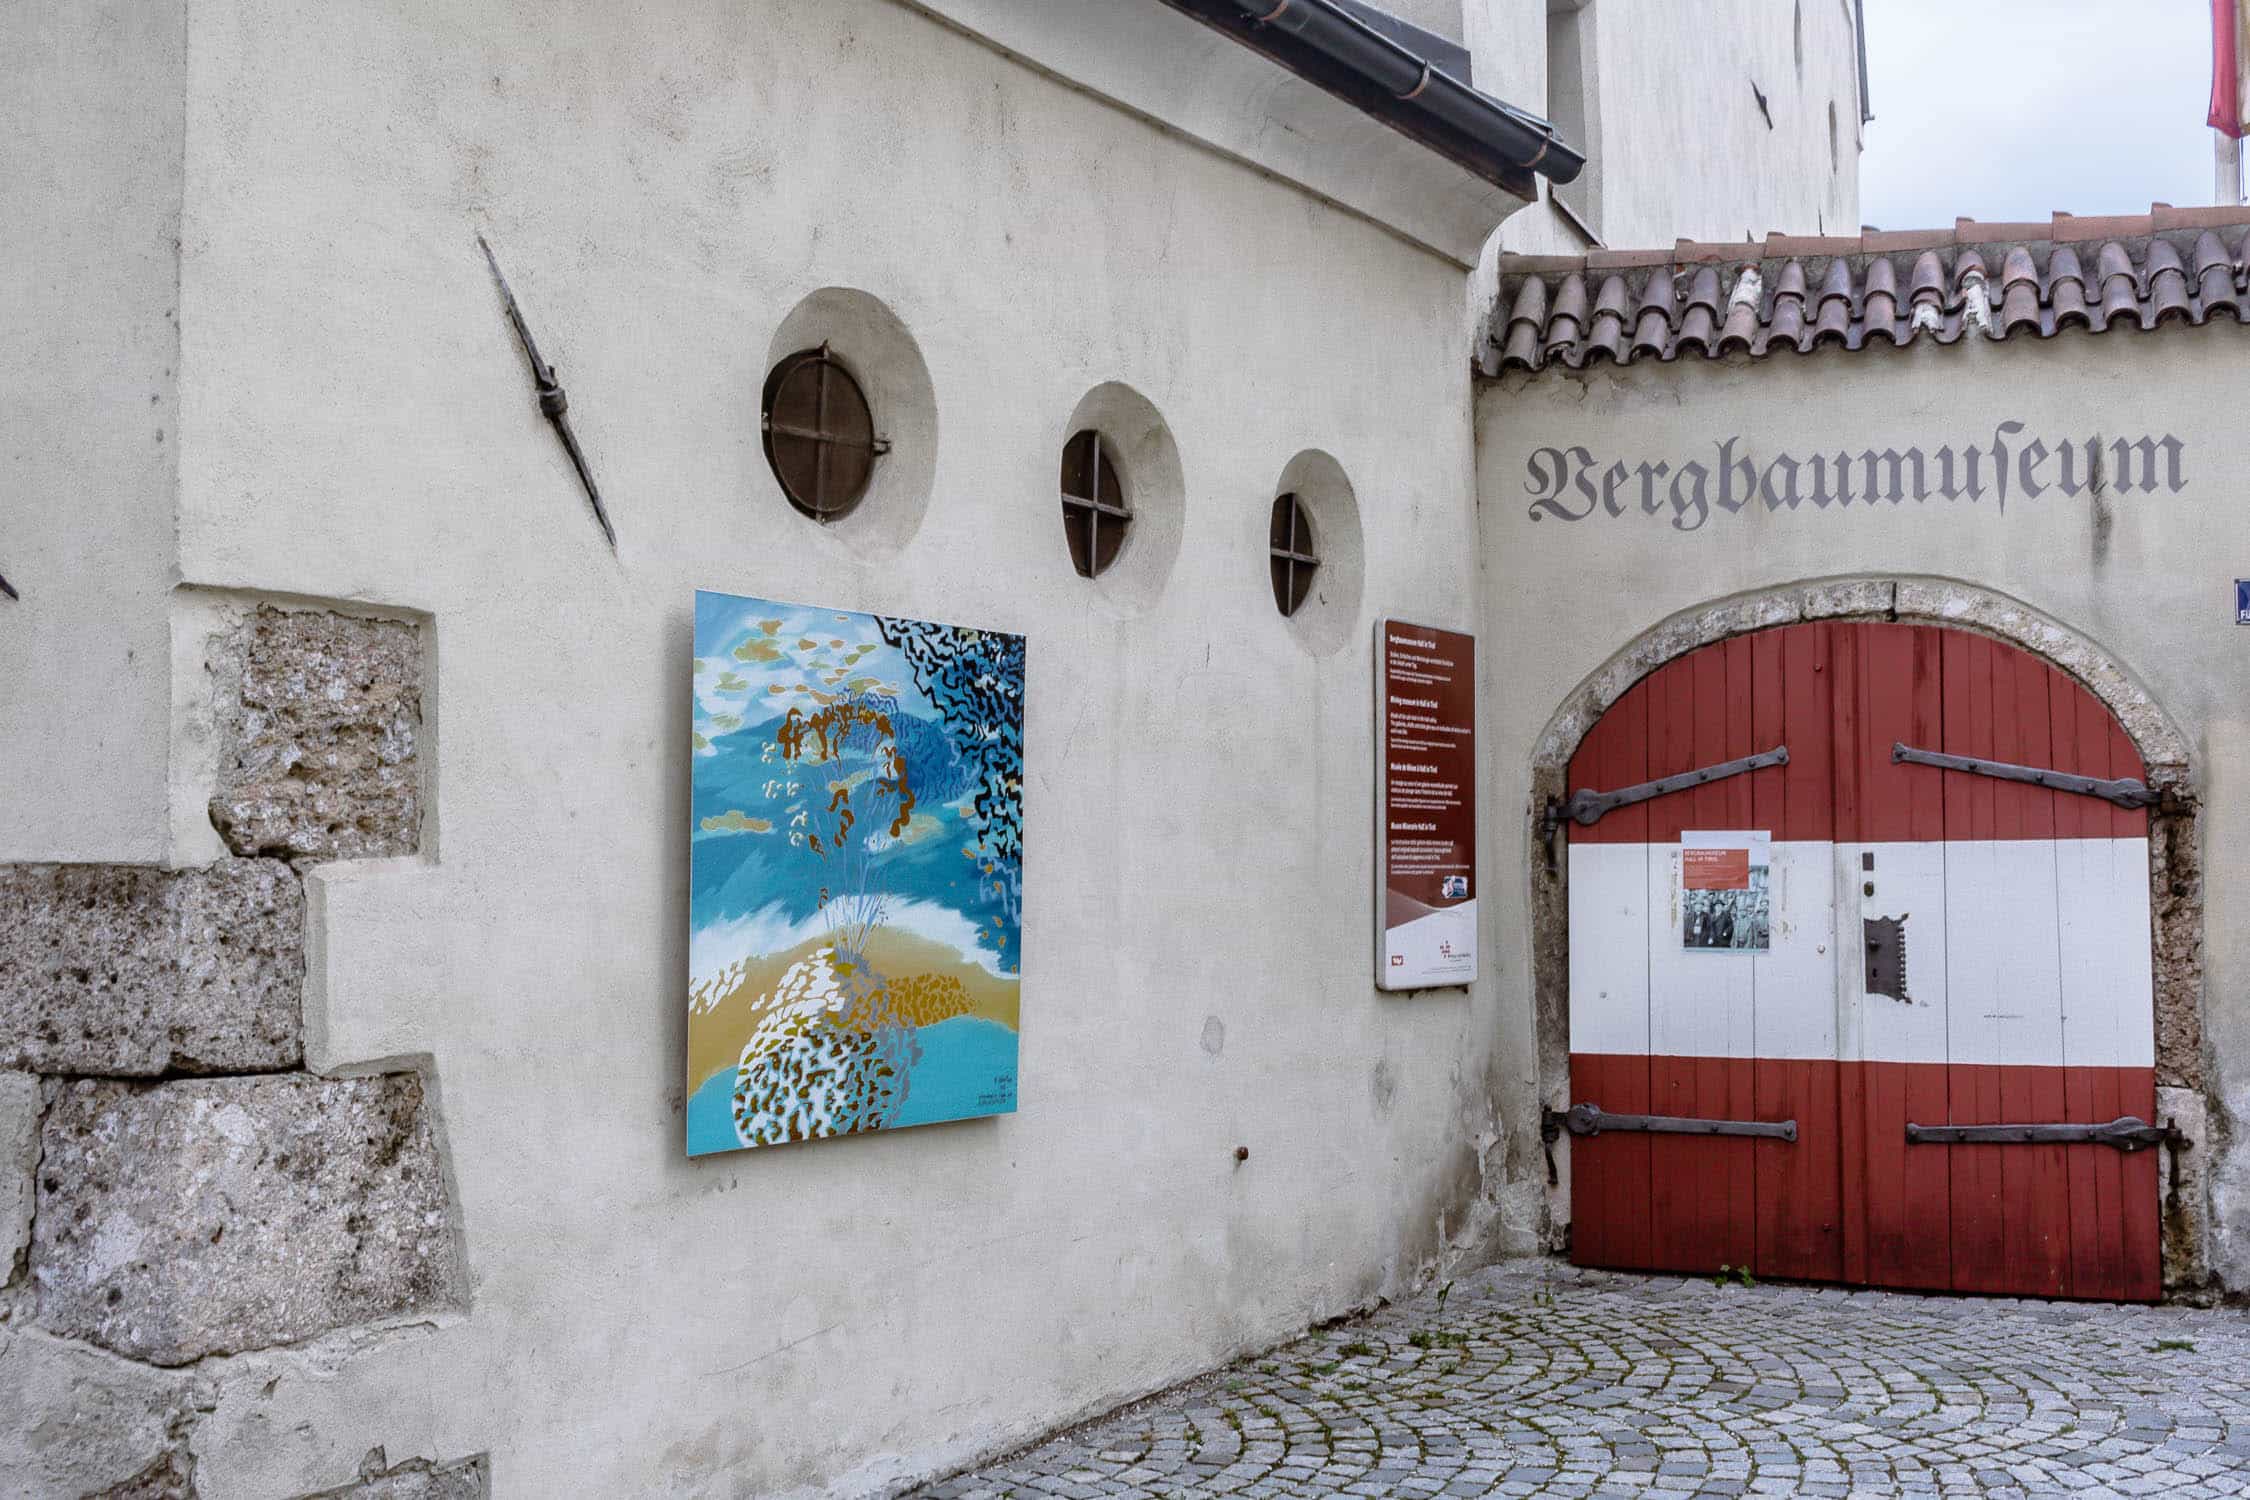 Best Ager Reiseblog in Hall Wattens - Sehenswürdigkeiten in Tirol - Stadrundgang und Stadtführung - Tipps für den Aufenthalt in Österreich - Reiseblogger